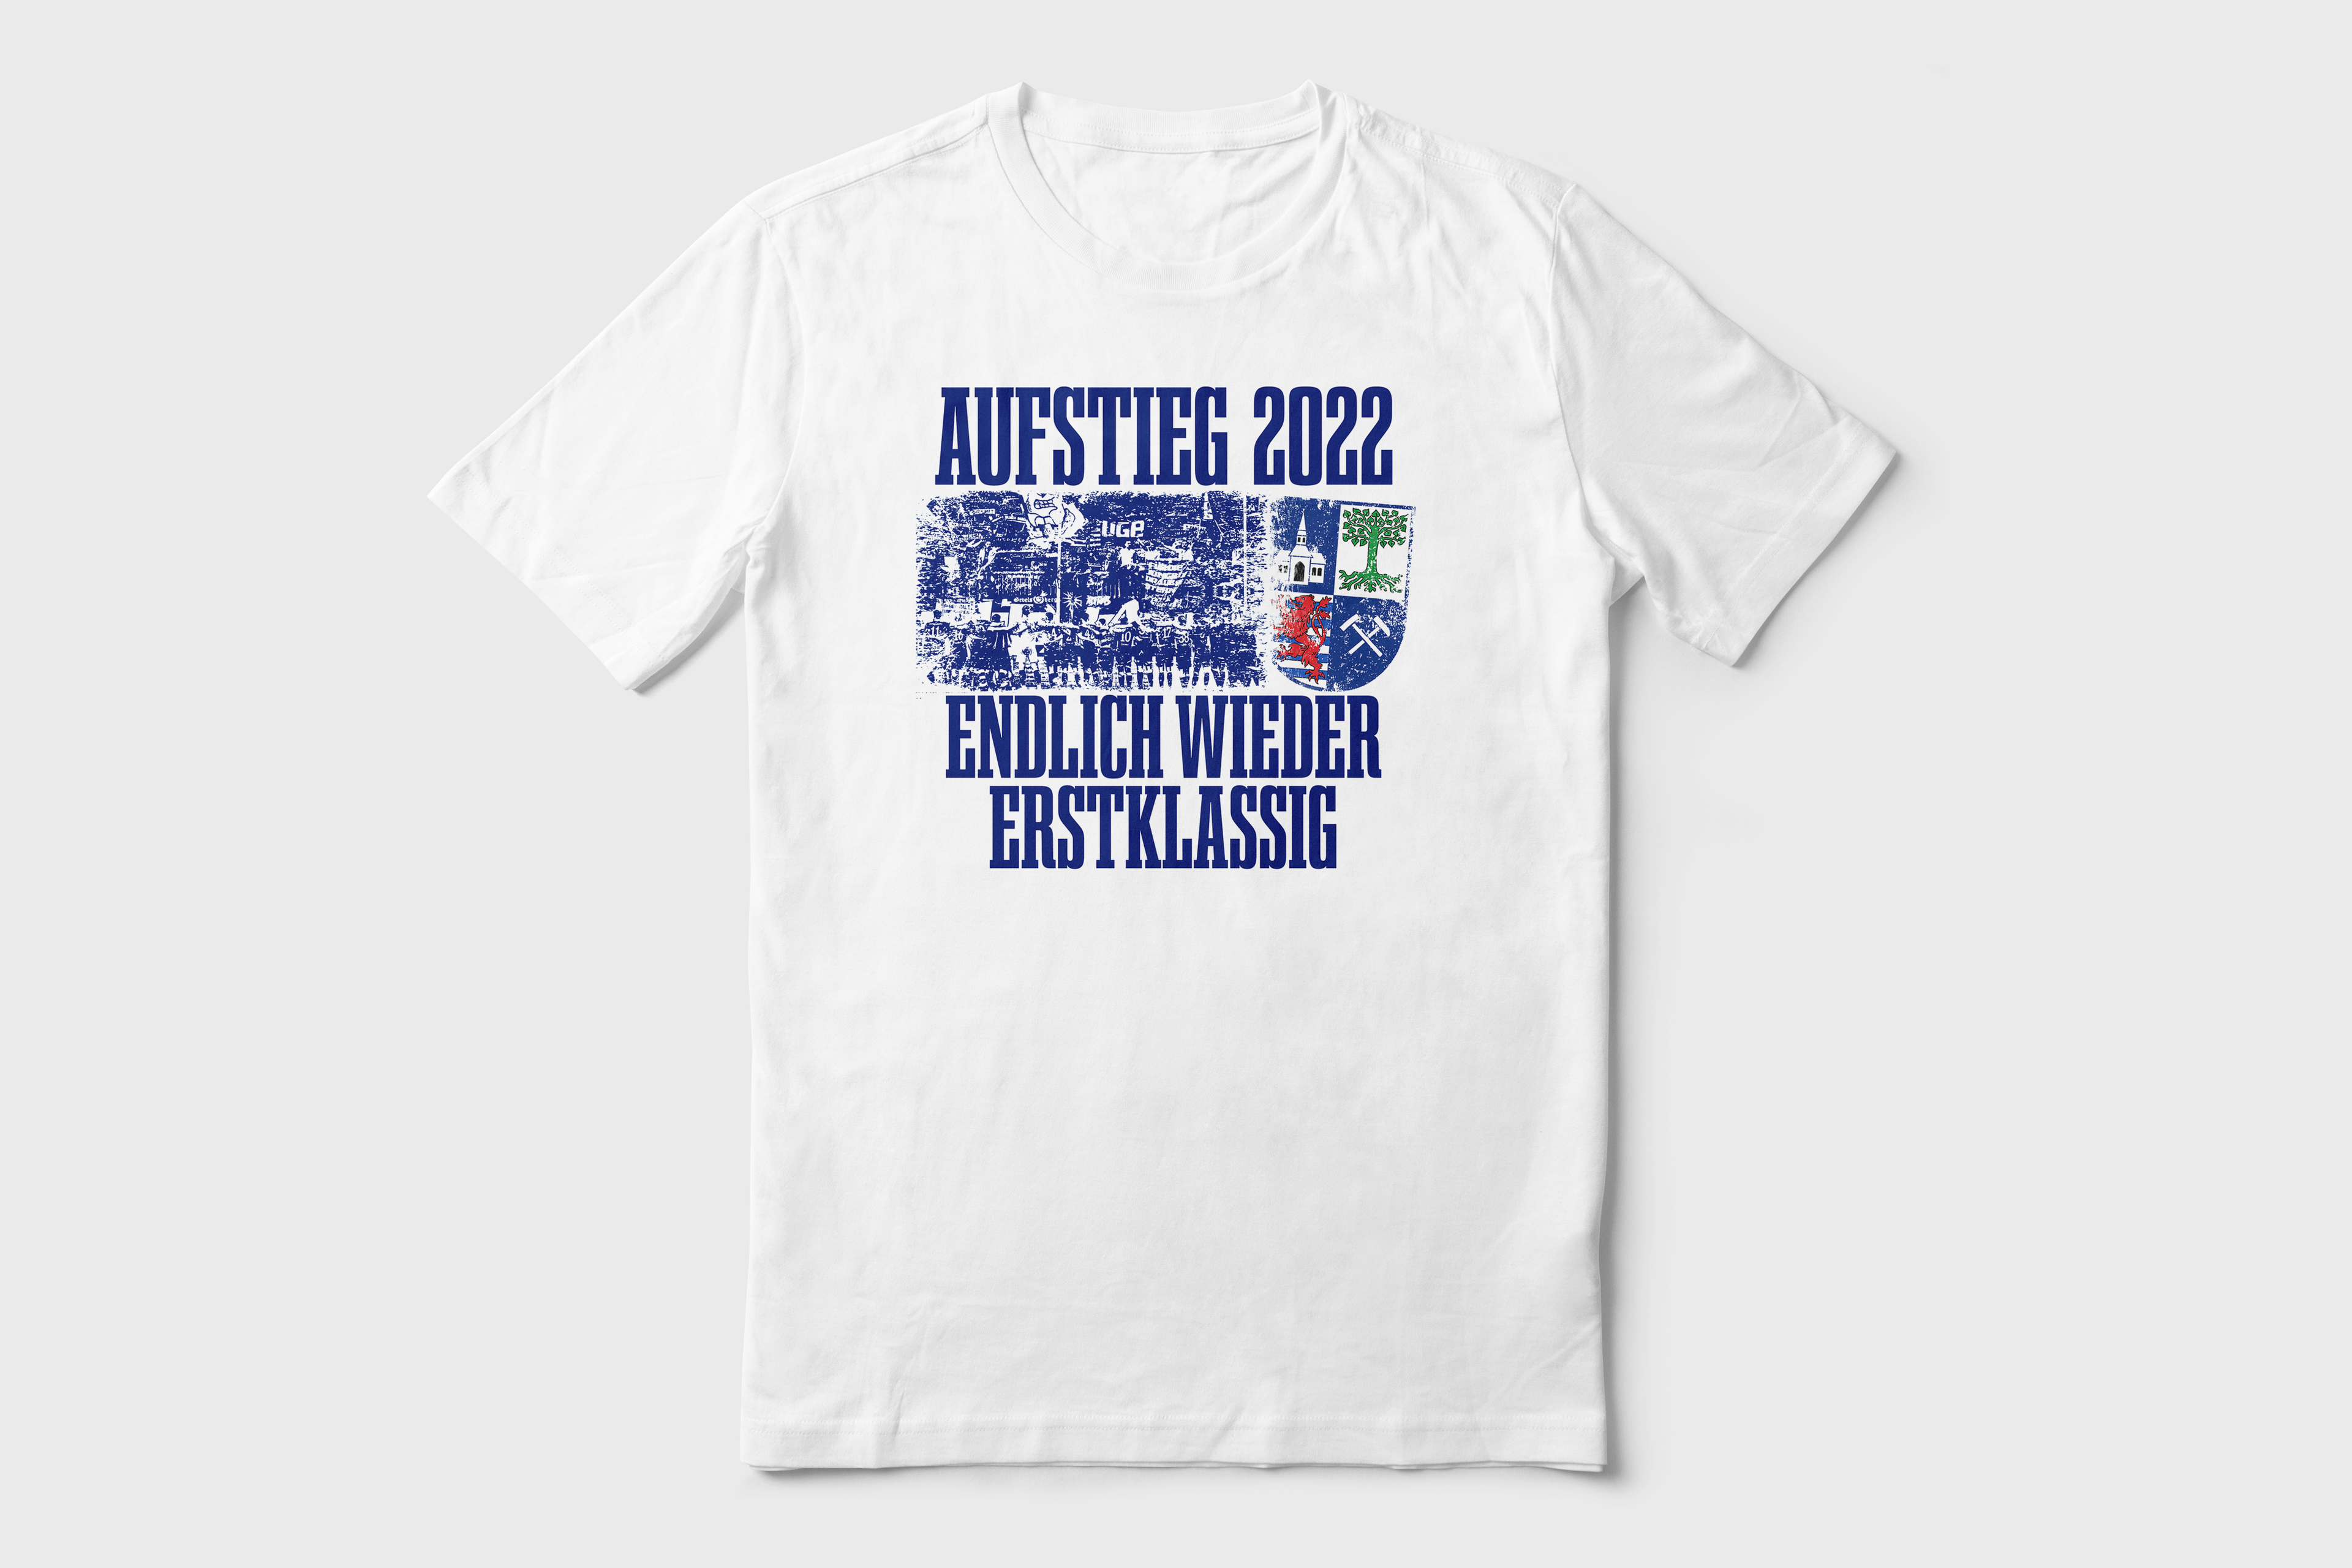 Aufstieg 2022 - Endlich wieder erstklassig! T-Shirt  Limitiert!